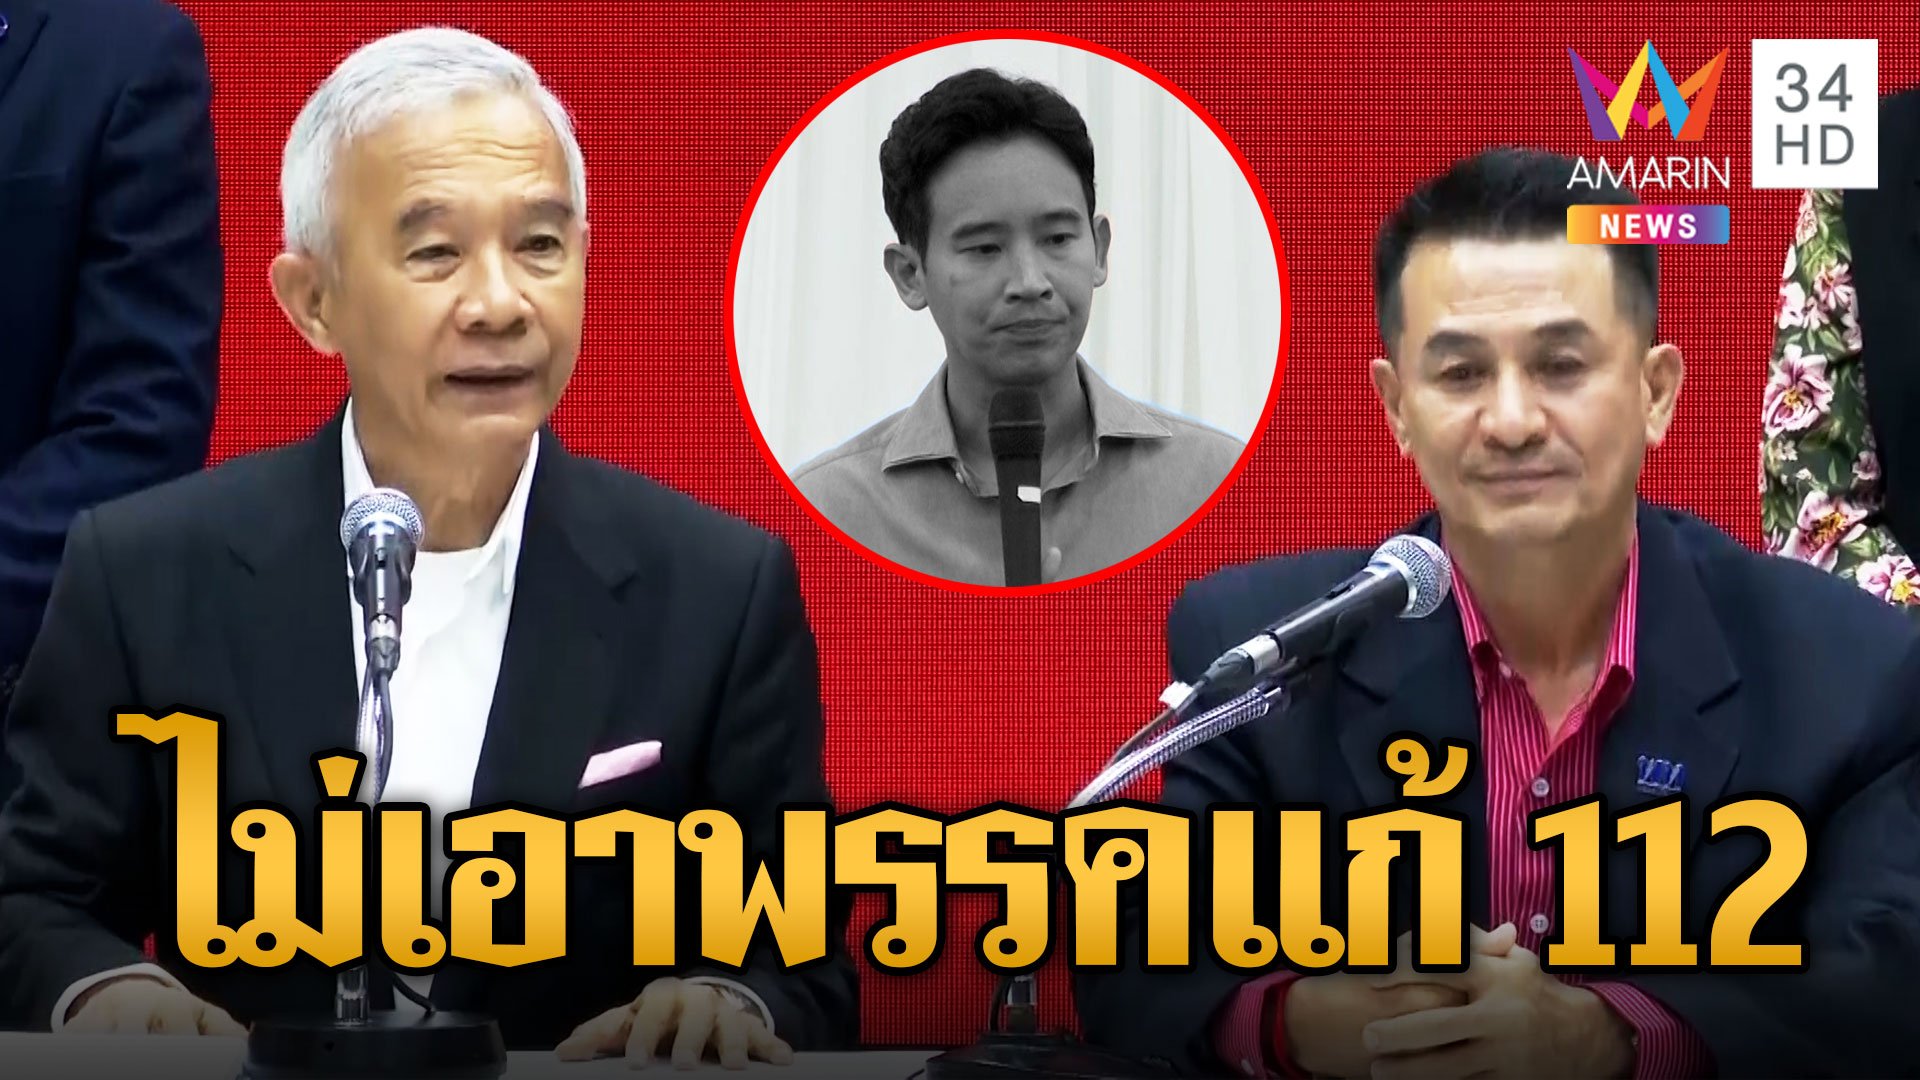 "สุวัจน์" นำทีมชาติพัฒนากล้า คุยเพื่อไทยดีลร่วมตั้งรัฐบาล ลั่นไม่เอาพรรคก้าวไกล | ข่าวอรุณอมรินทร์ | 23 ก.ค. 66 | AMARIN TVHD34